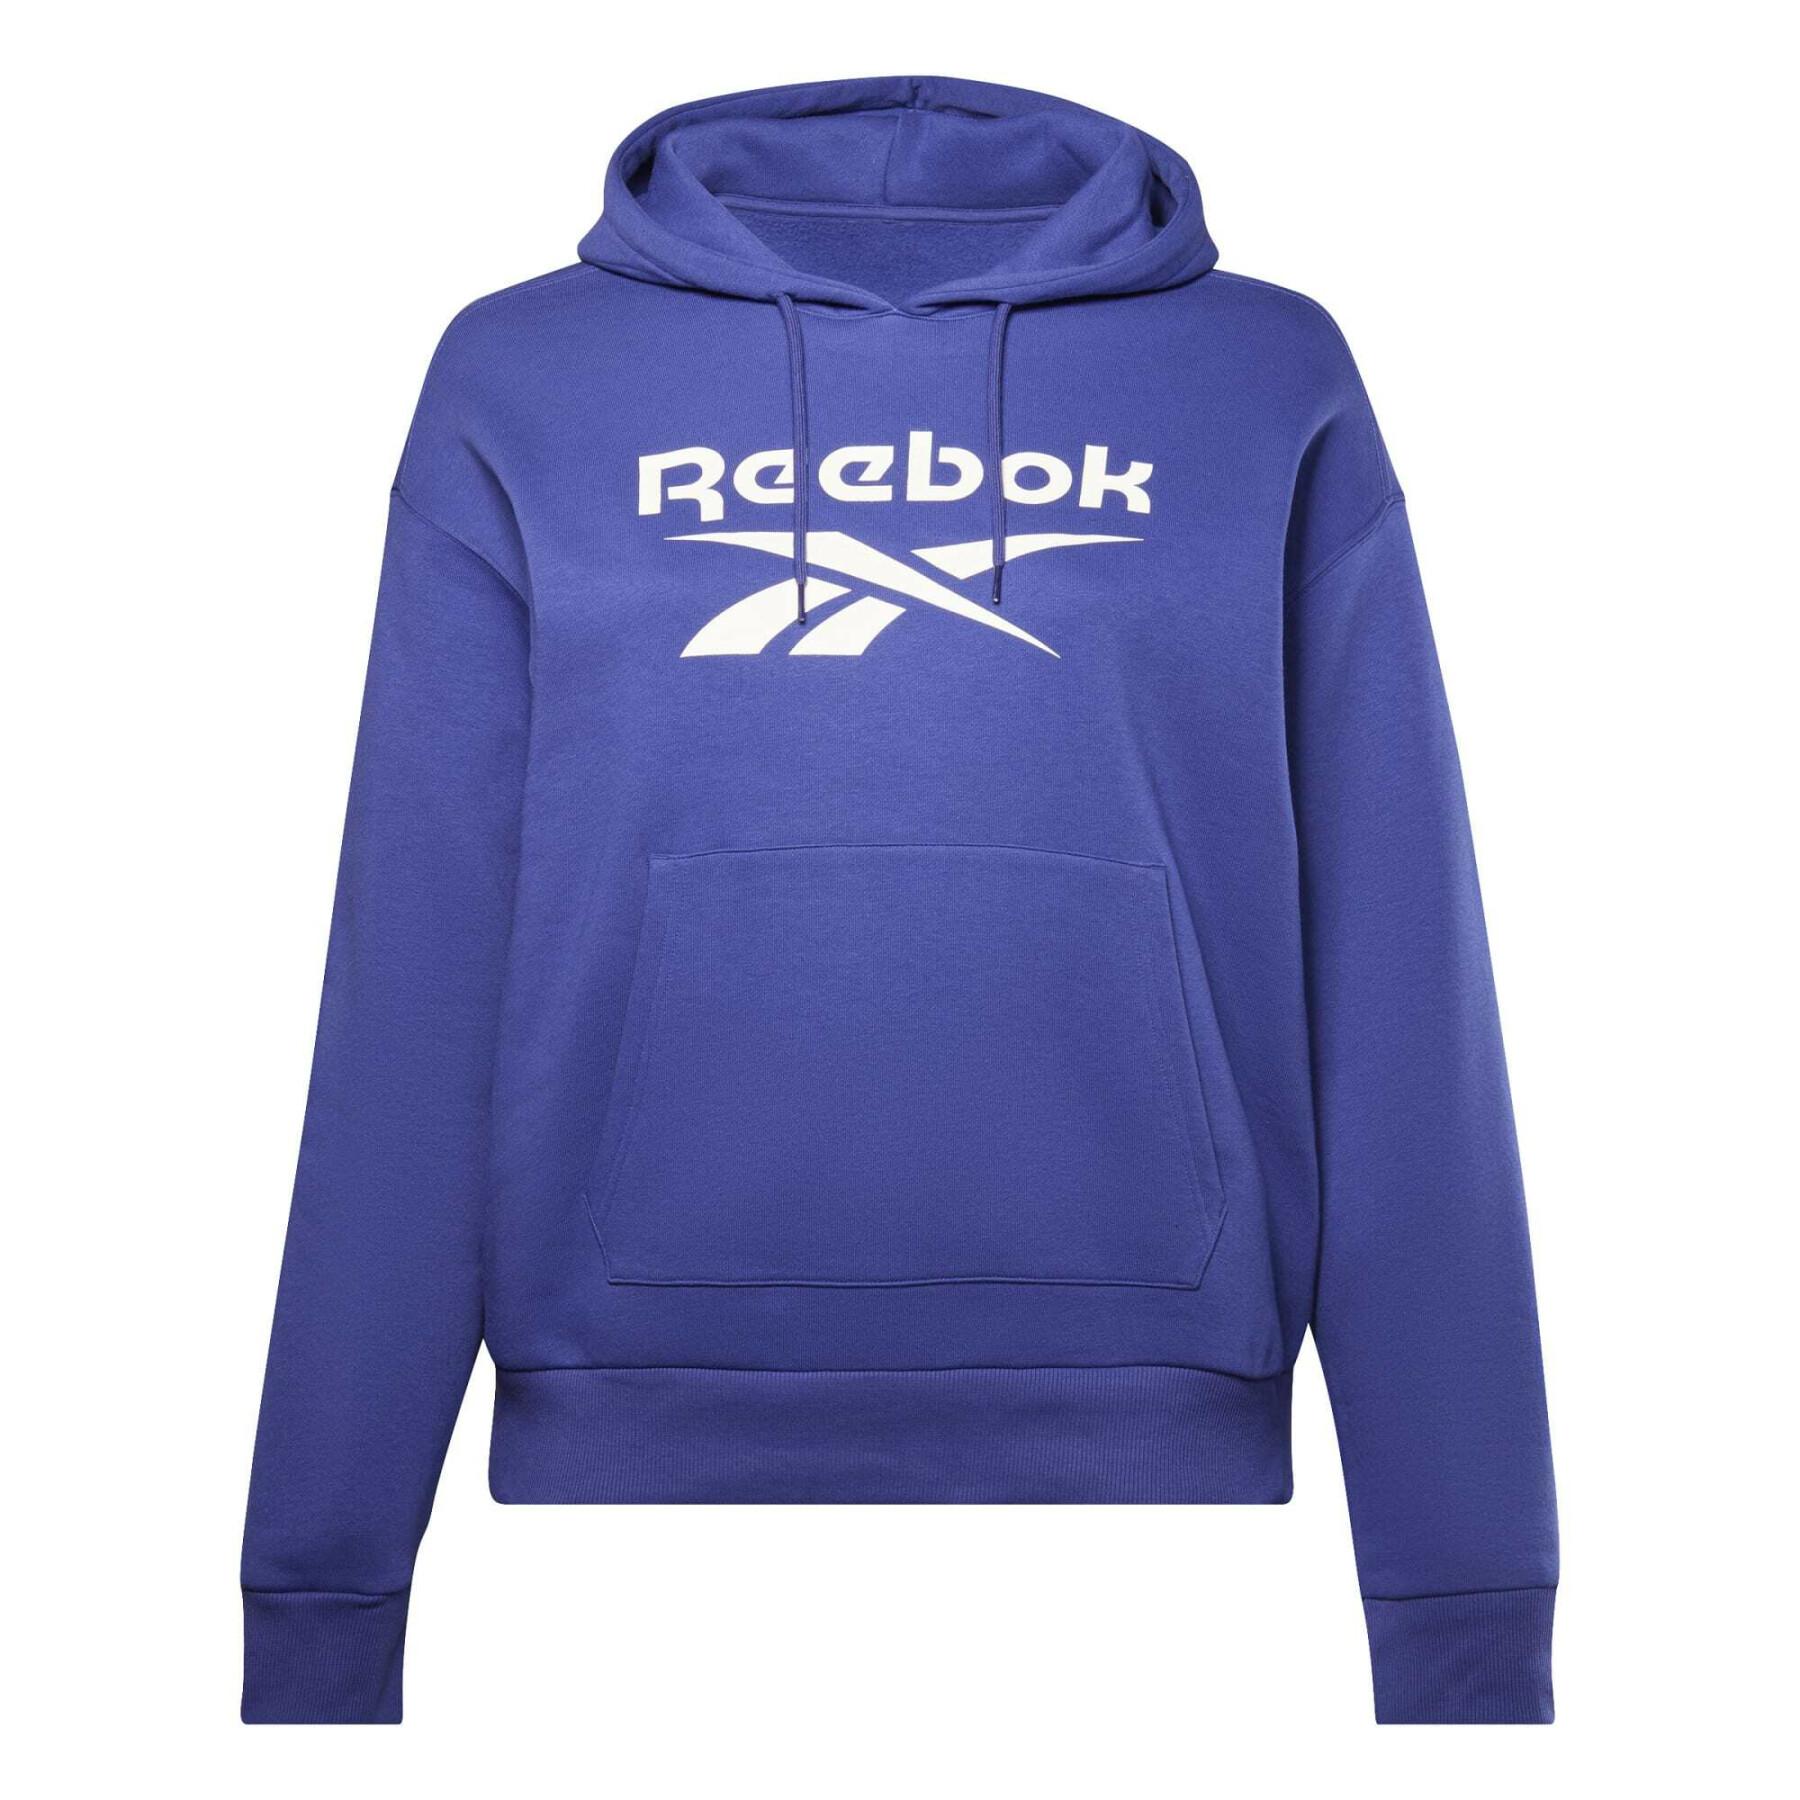 Women's logo sweatshirt Reebok Identity GT